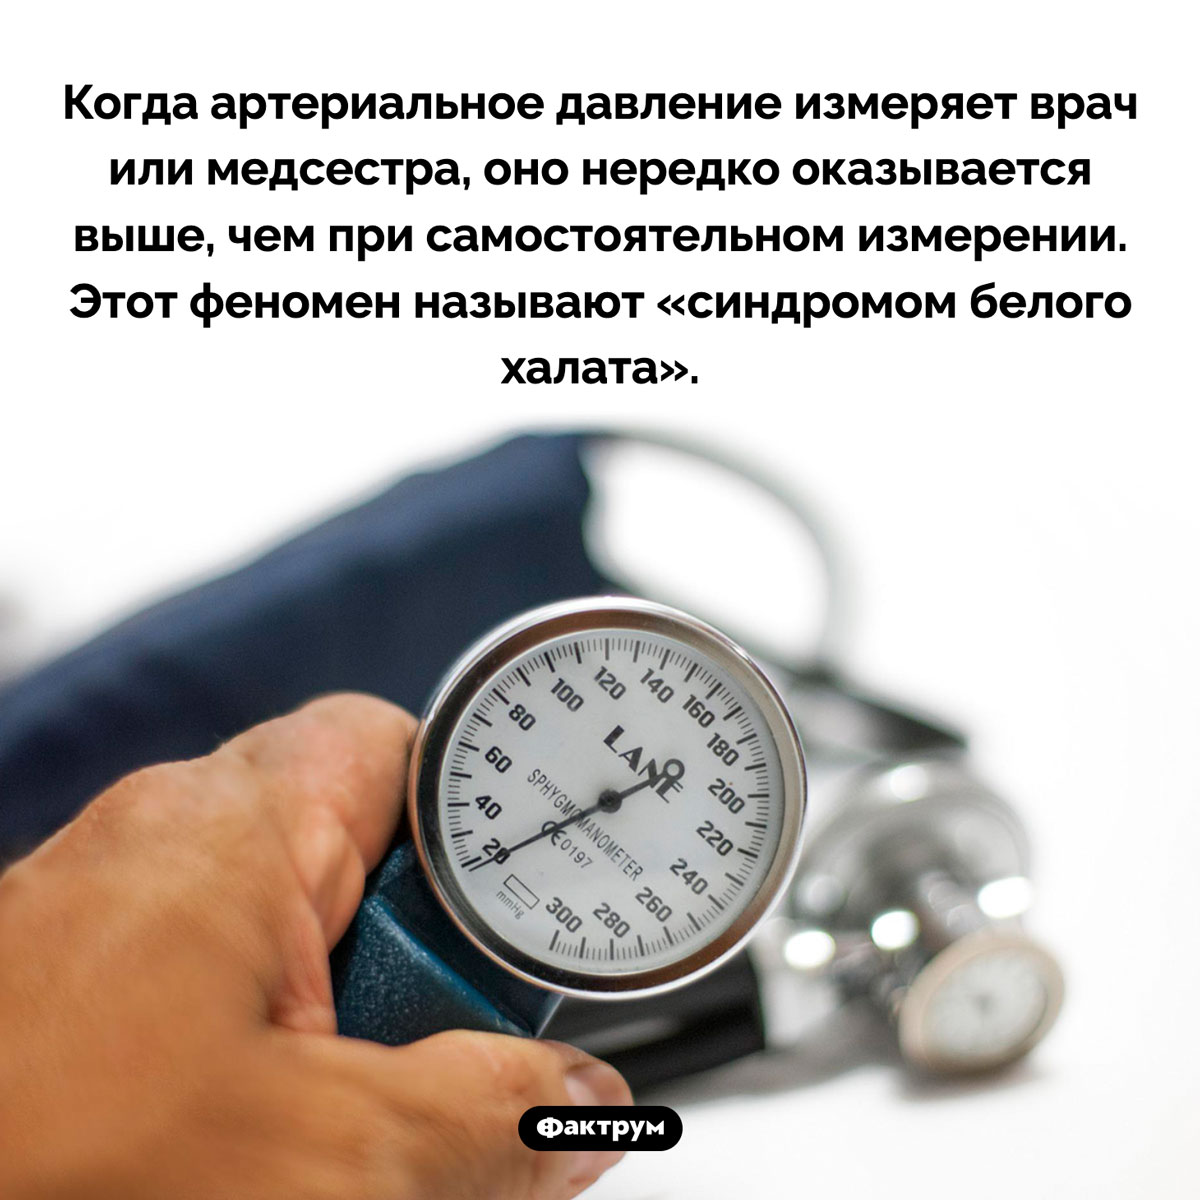 Синдром белого халата. Когда артериальное давление измеряет врач или медсестра, оно нередко оказывается выше, чем при самостоятельном измерении. Этот феномен называют «синдромом белого халата».